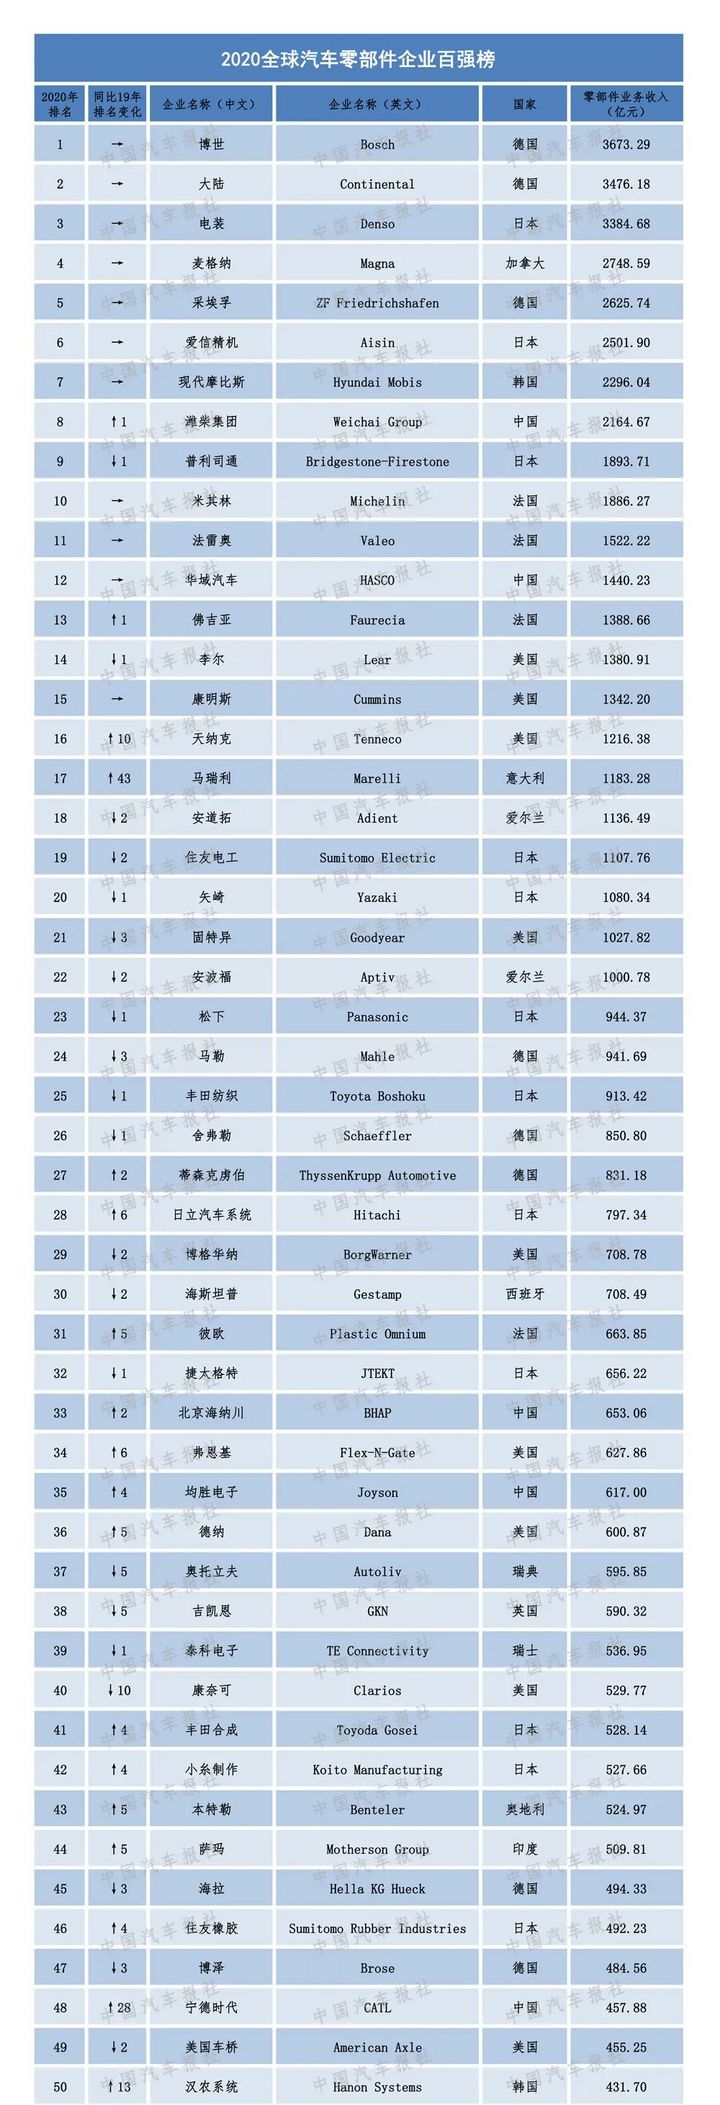 潍柴排名2020_2020年中国机械设备行业品牌价值TOP30排行榜